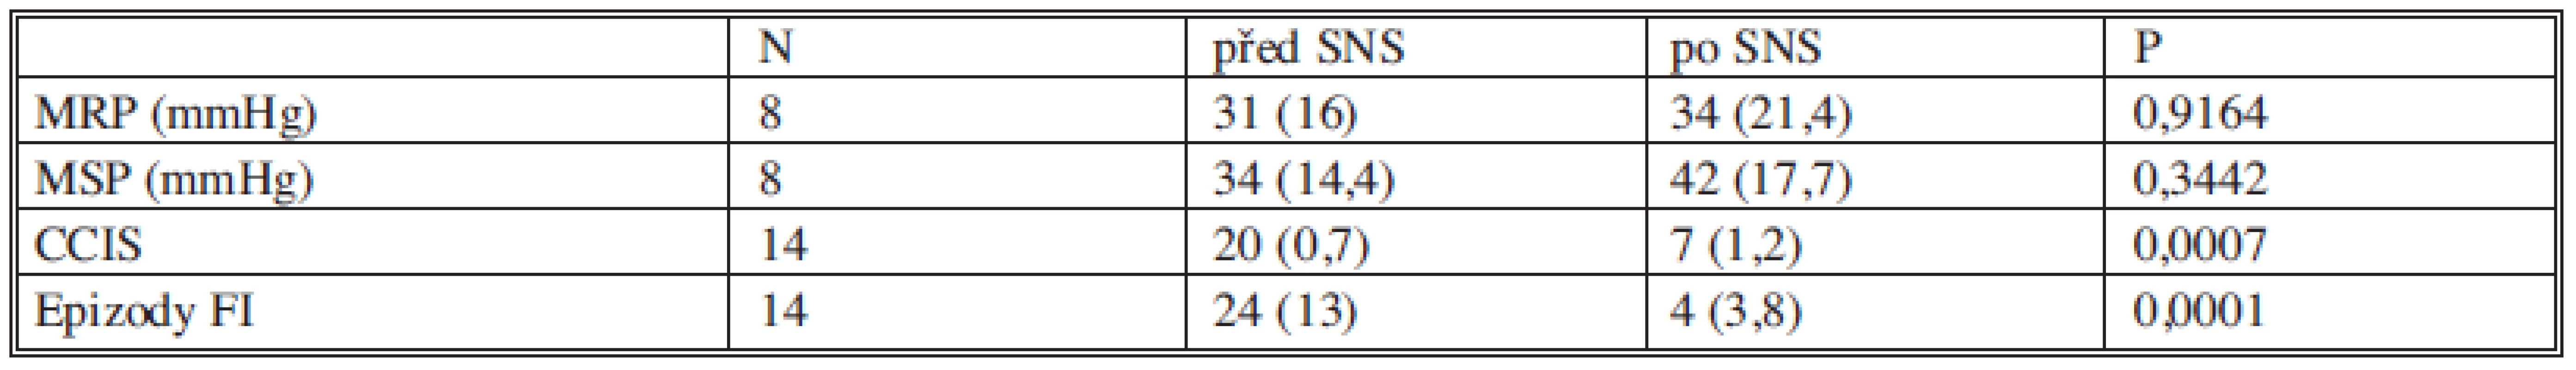 Souhrn hodnocení funkčních výsledků před SNS a po SNS (uvedeny jsou průměrné hodnoty se směrodatnou odchylkou).
Tab. 5. Assessment summary of functional pre- and post- SNS outcomes (mean values with standard deviations are presented).